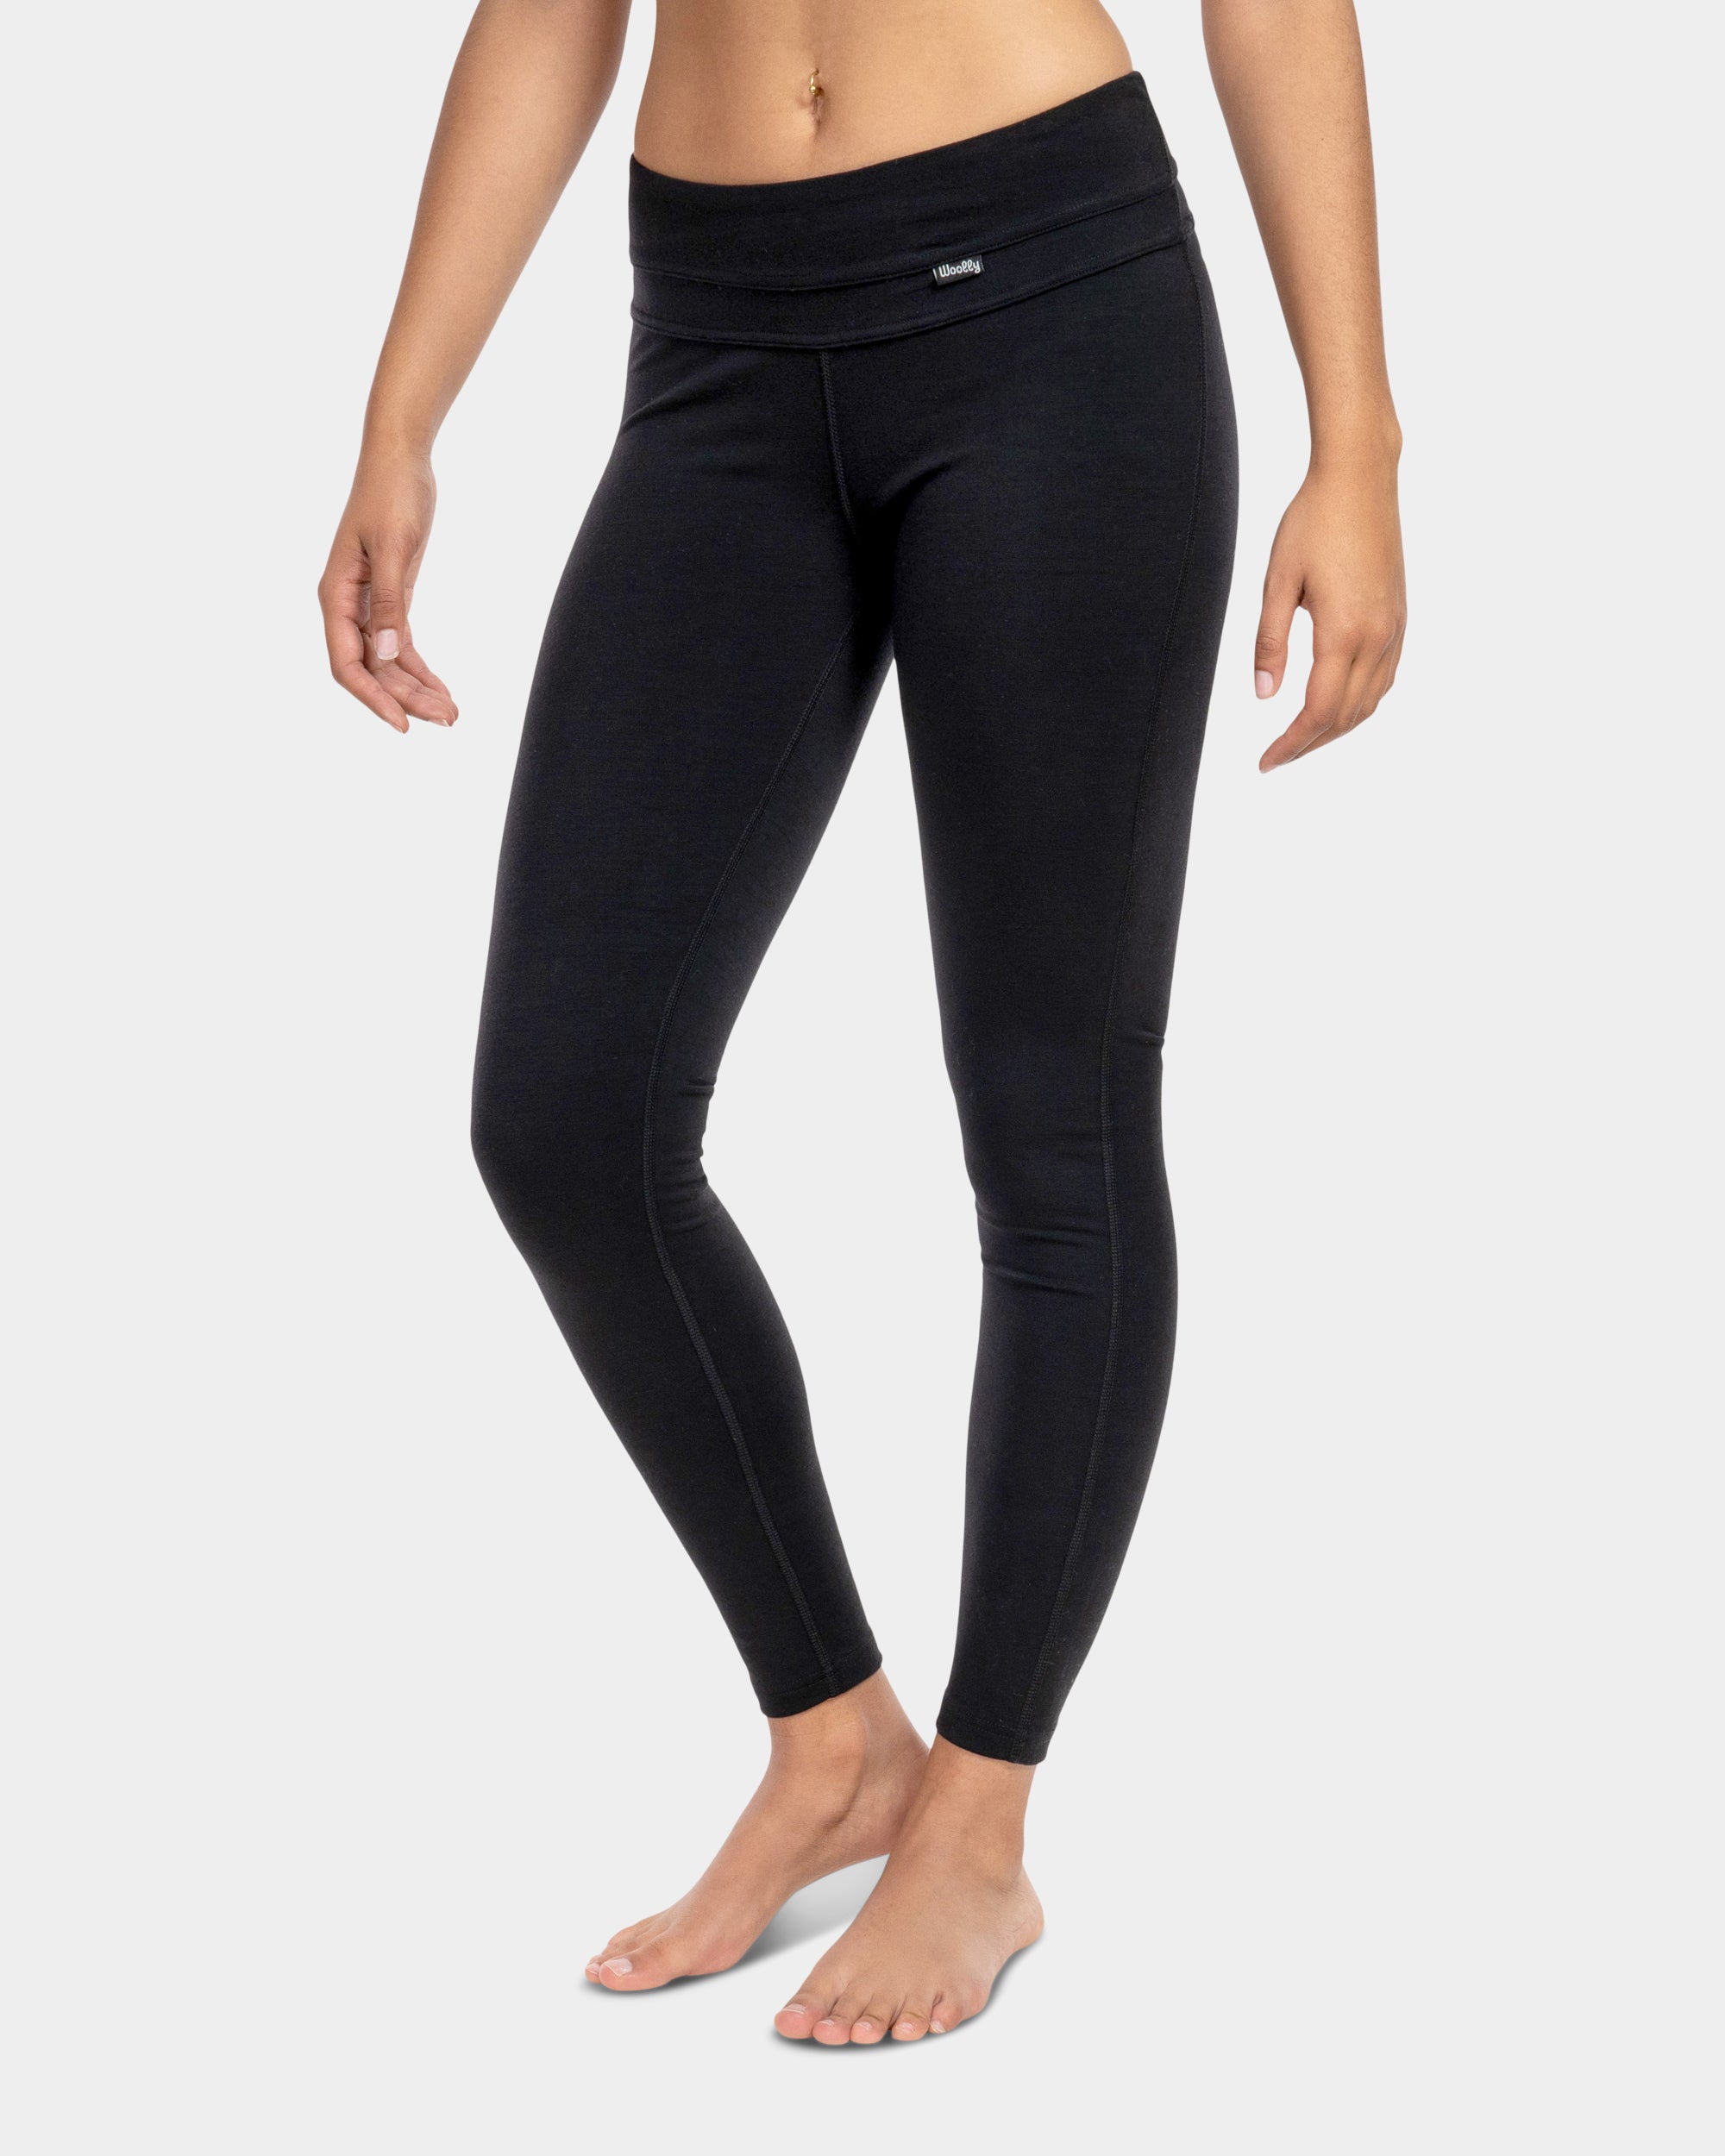 Merino Wool Leggings for Women Running Pants Yoga Breathable